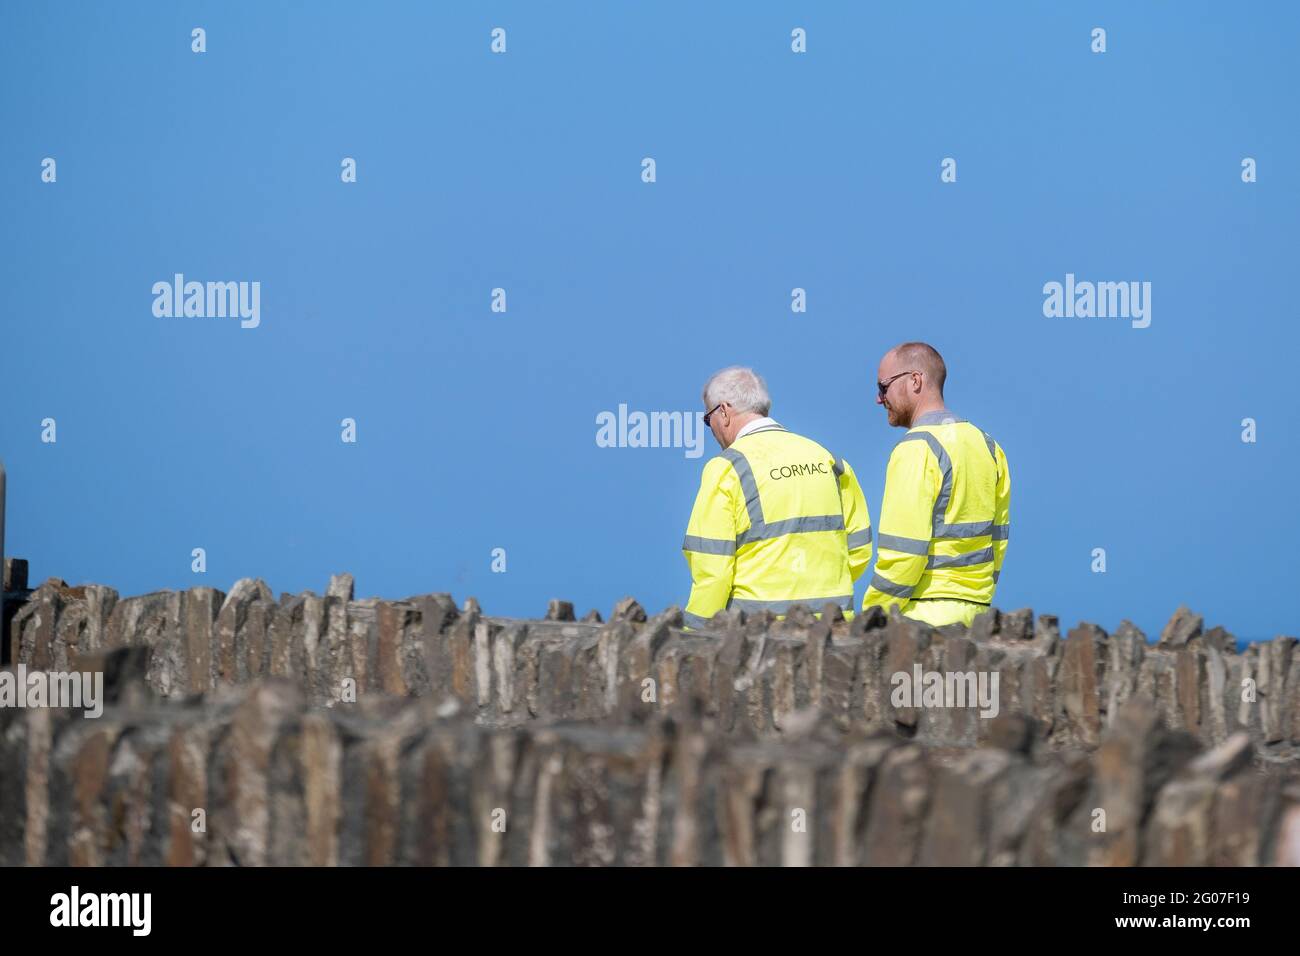 Deux travailleurs de Cormac portant une veste de sécurité jaune fluorescent haute viz vue contre un ciel bleu vif. Banque D'Images